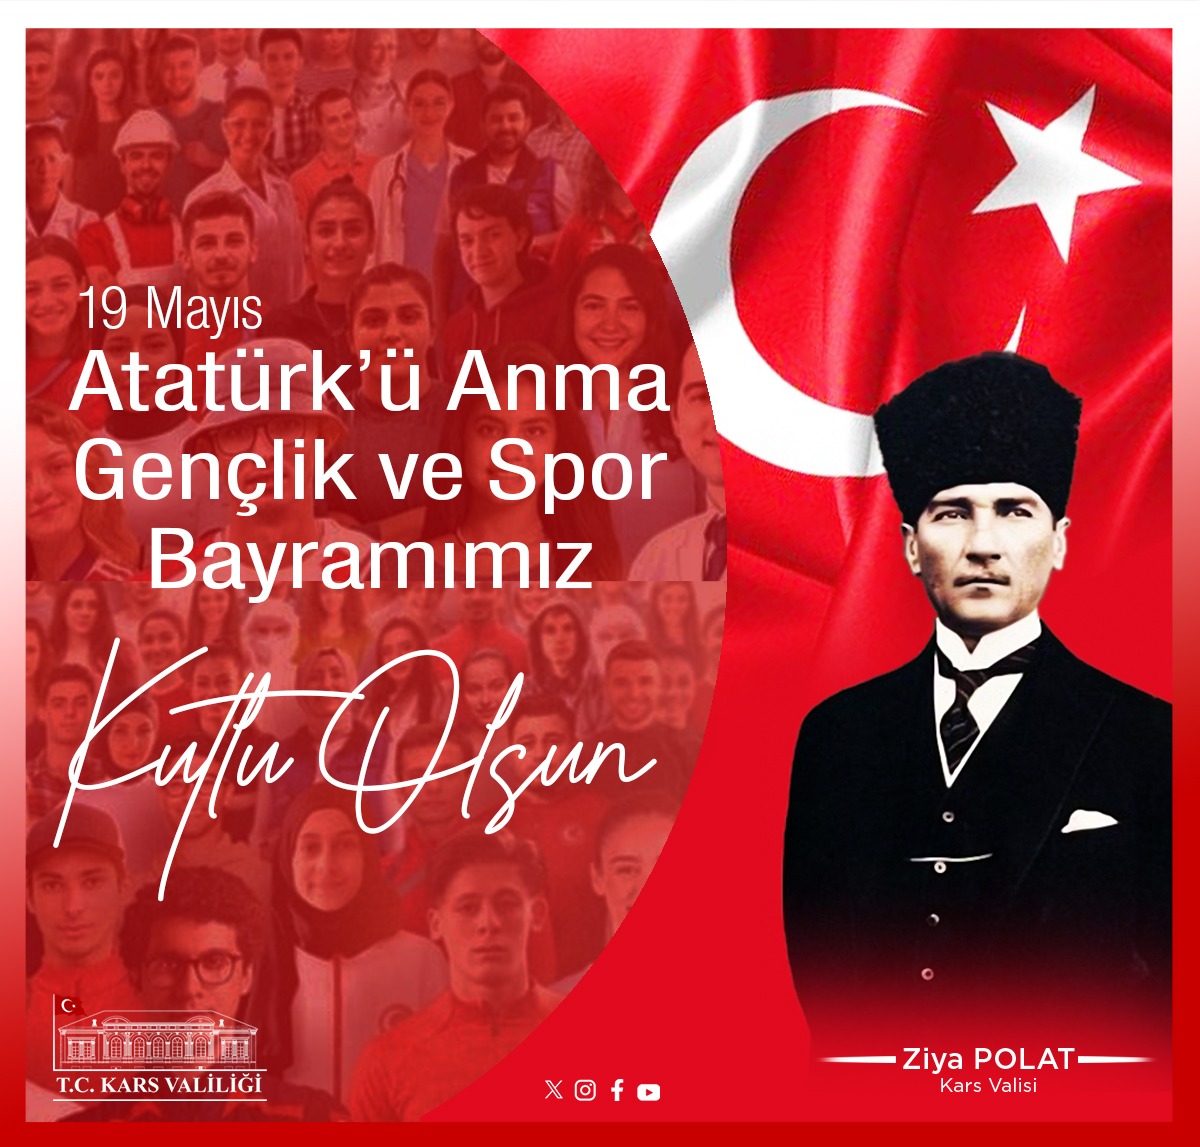 Valimiz Ziya Polat'ın Atatürk'ü Anma Gençlik ve Spor Bayramı Mesajı